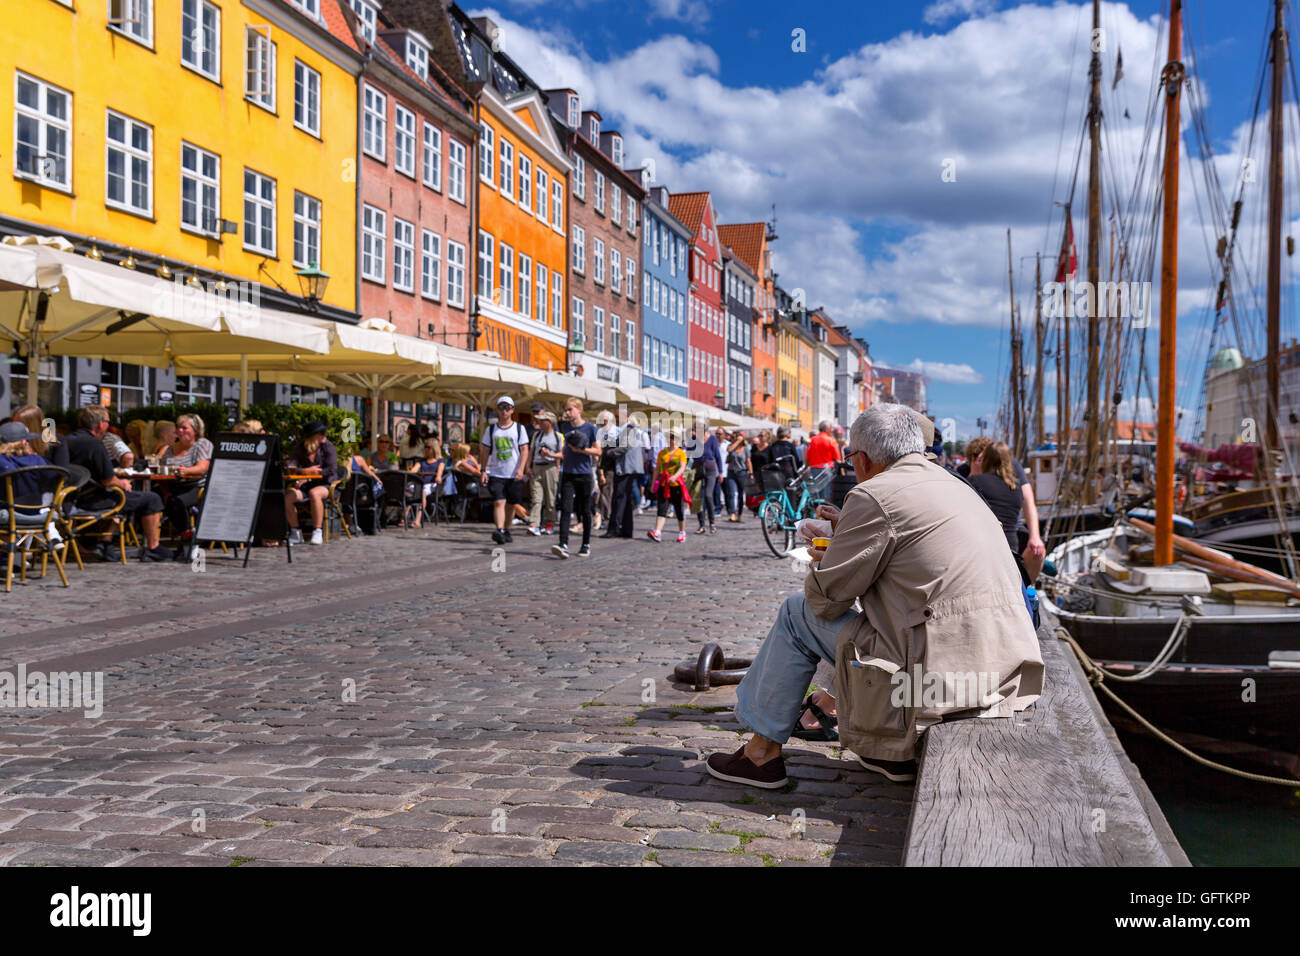 People in Nyhavn, Copenhagen, Denmark Stock Photo